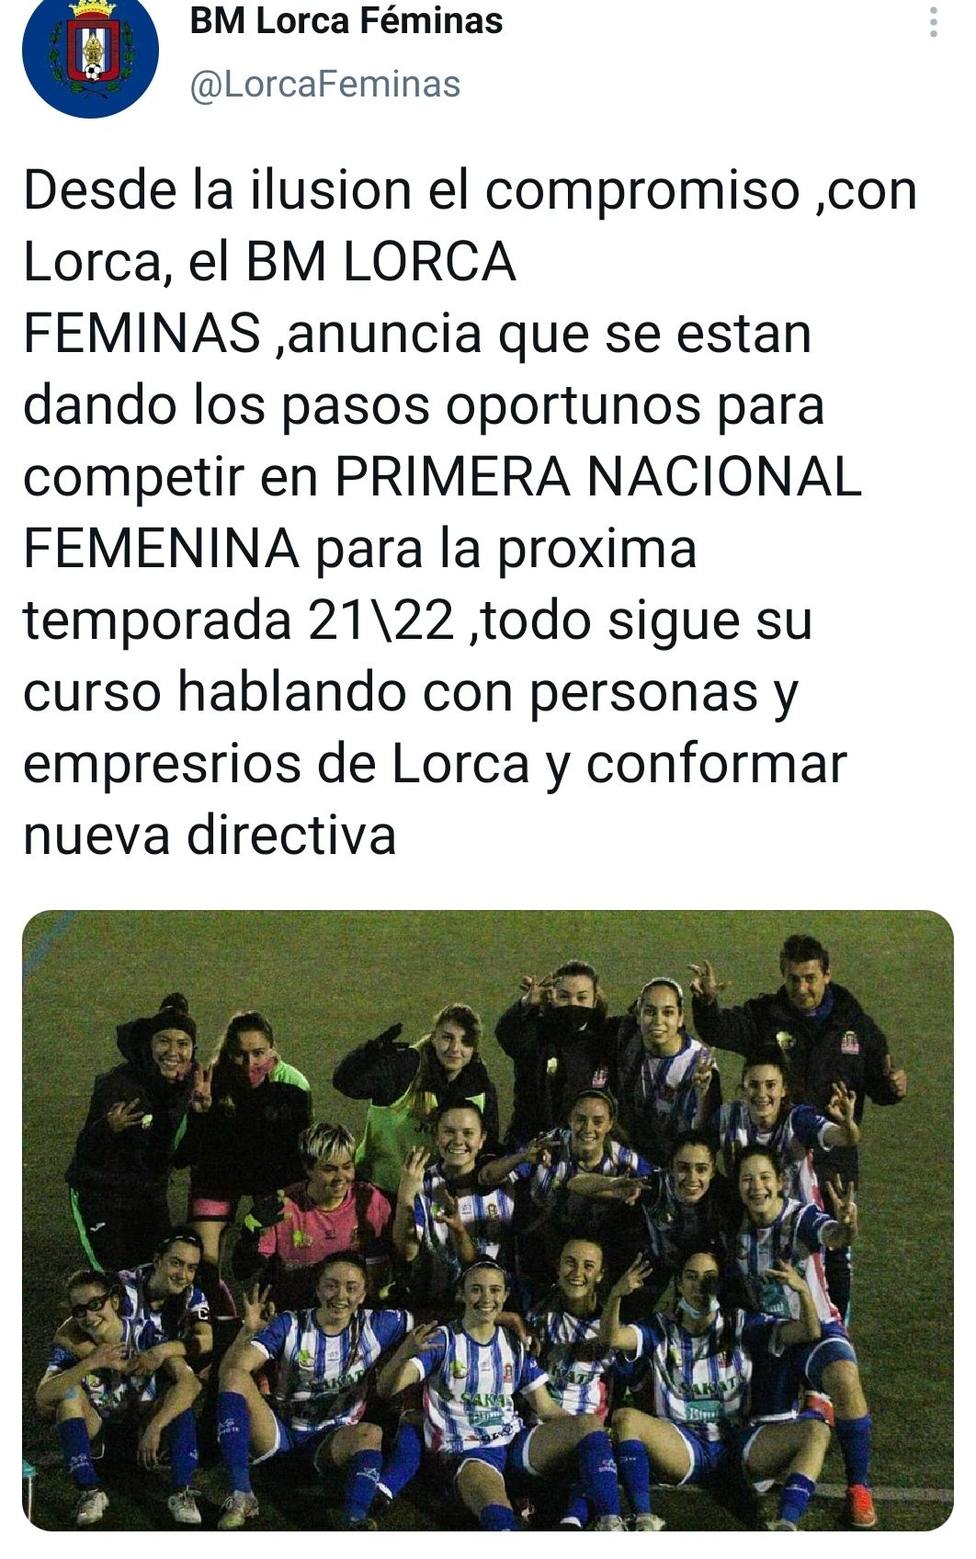 El Lorca Féminas presentará nueva directiva y confían en poder sacar adelante el proyecto 21/22